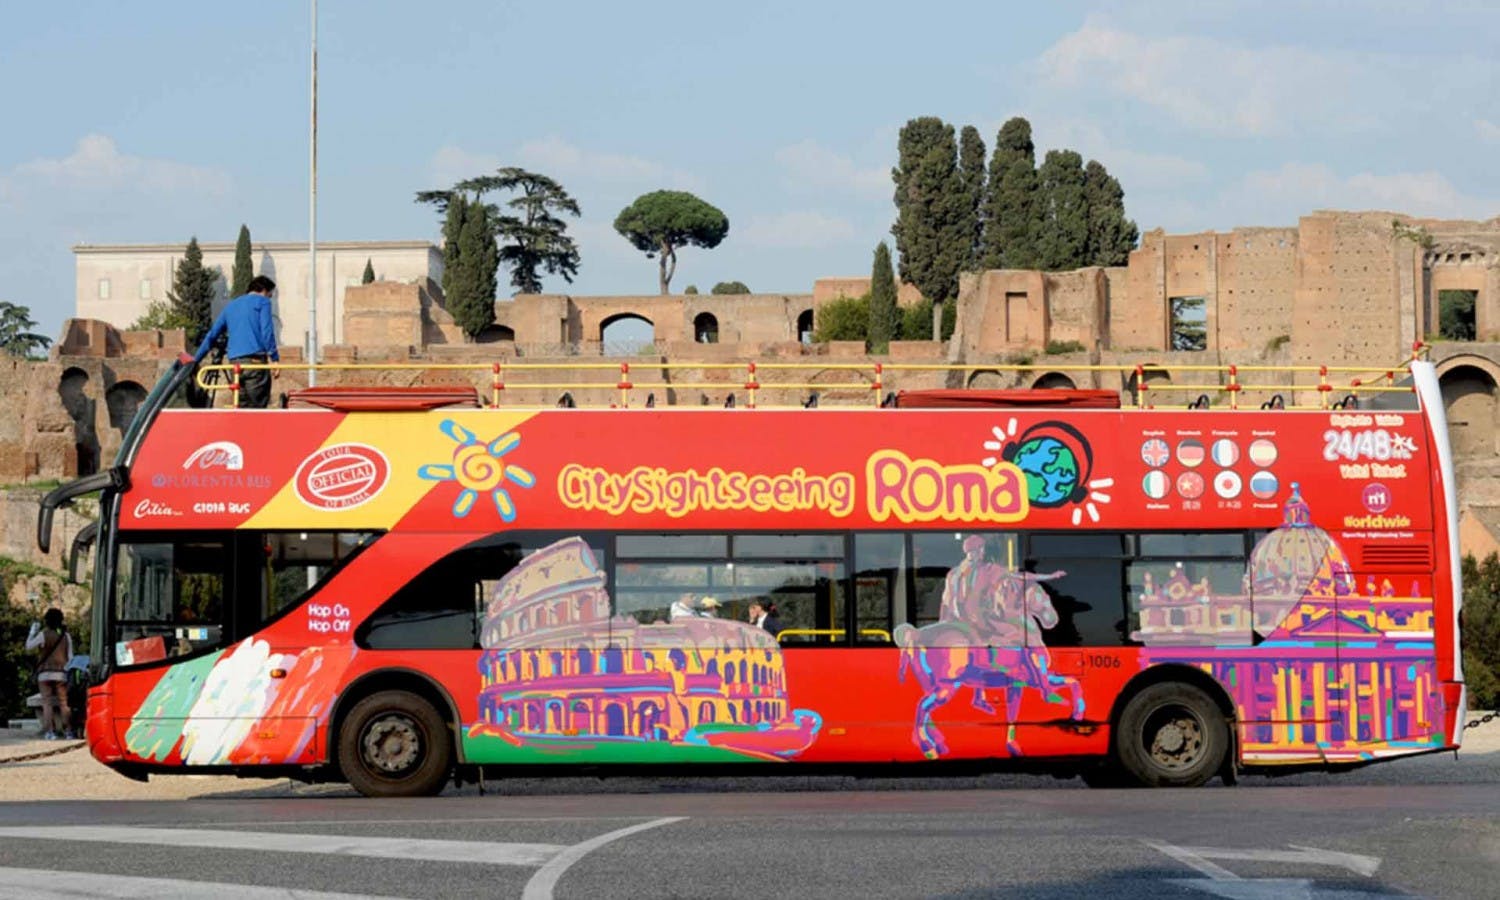 Rome Hop-on Hop-off Bus Tour - 24, 48, 72-Hour Tickets